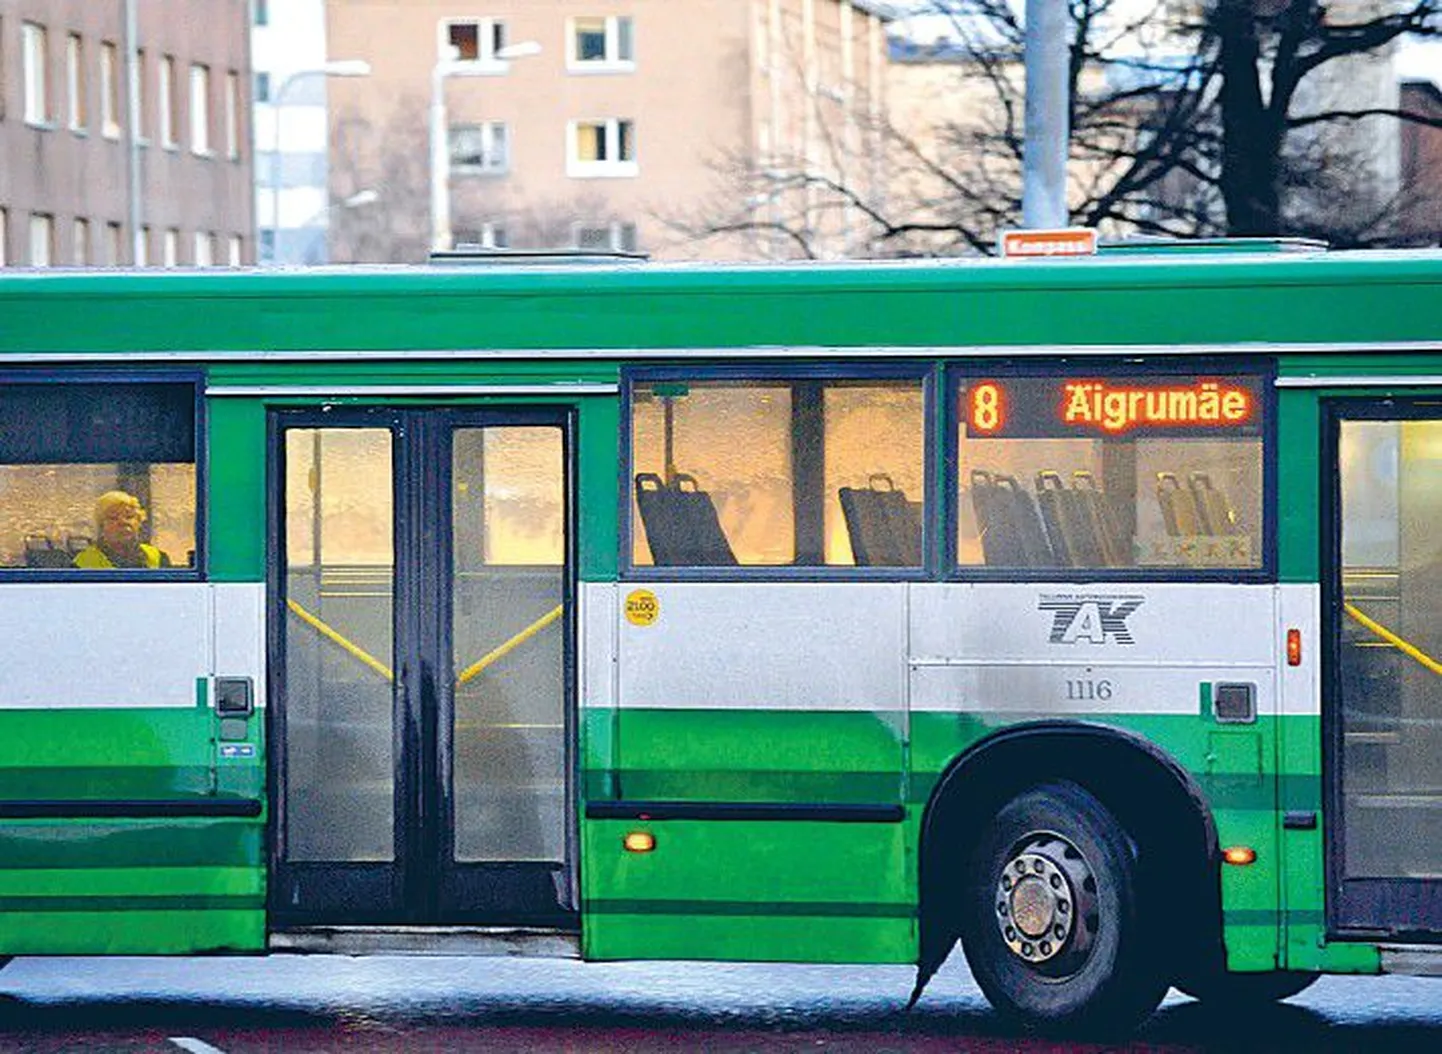 Количество пользующихся общественным транспортом в городах Эстонии уменьшается. Весной этого года в Таллинне по сравне­нию с осенью прошлого года количество пассажиров общественного транспорта сократилось на пять процентов.